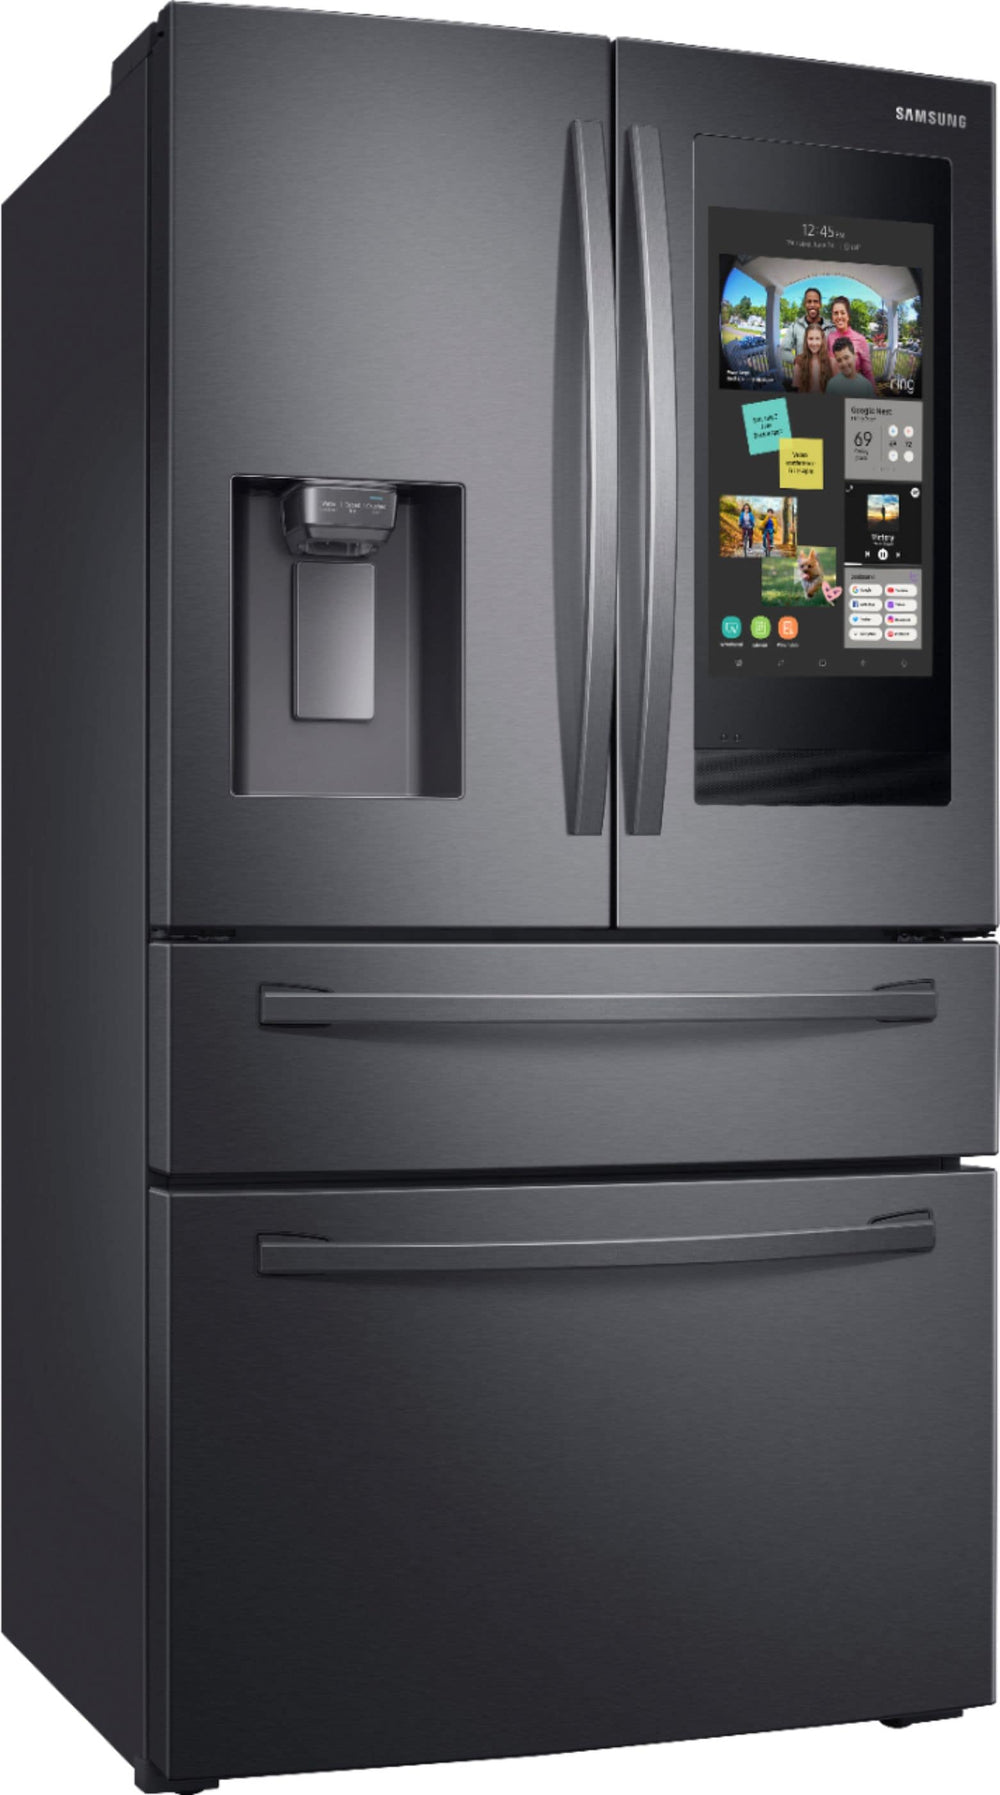 Samsung - Family Hub 22.2 Cu. Ft. 4-Door French Door Counter-Depth Fingerprint Resistant Refrigerator - Black stainless steel_1